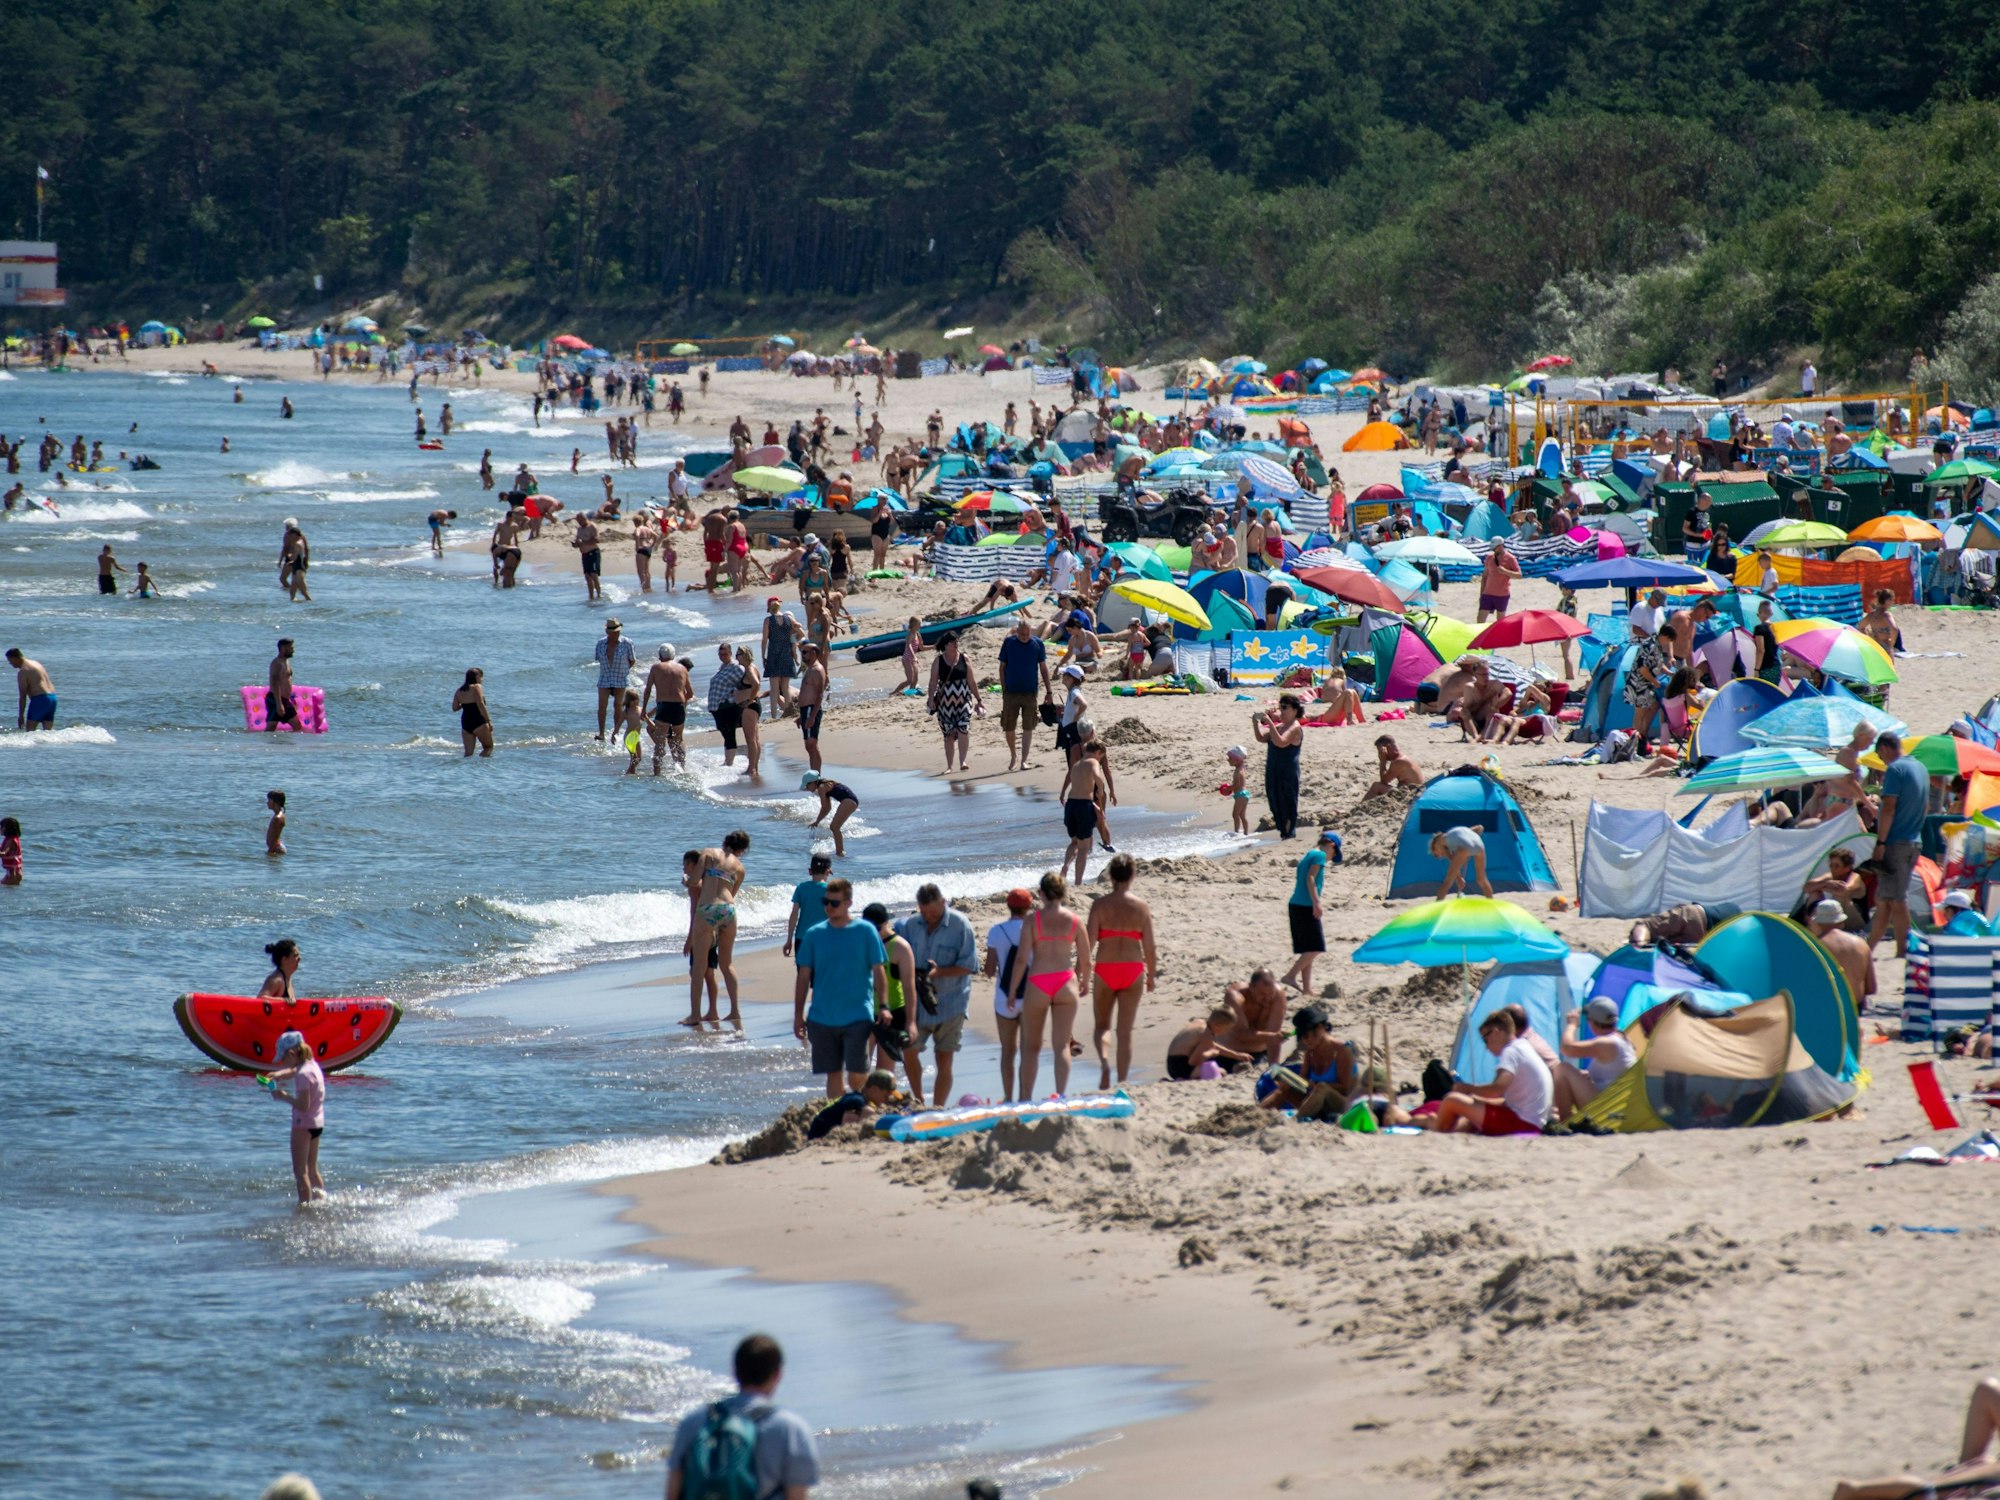 Zahlreiche Menschen sind bei sonnigem Wetter am Strand der Insel Usedom unterwegs.